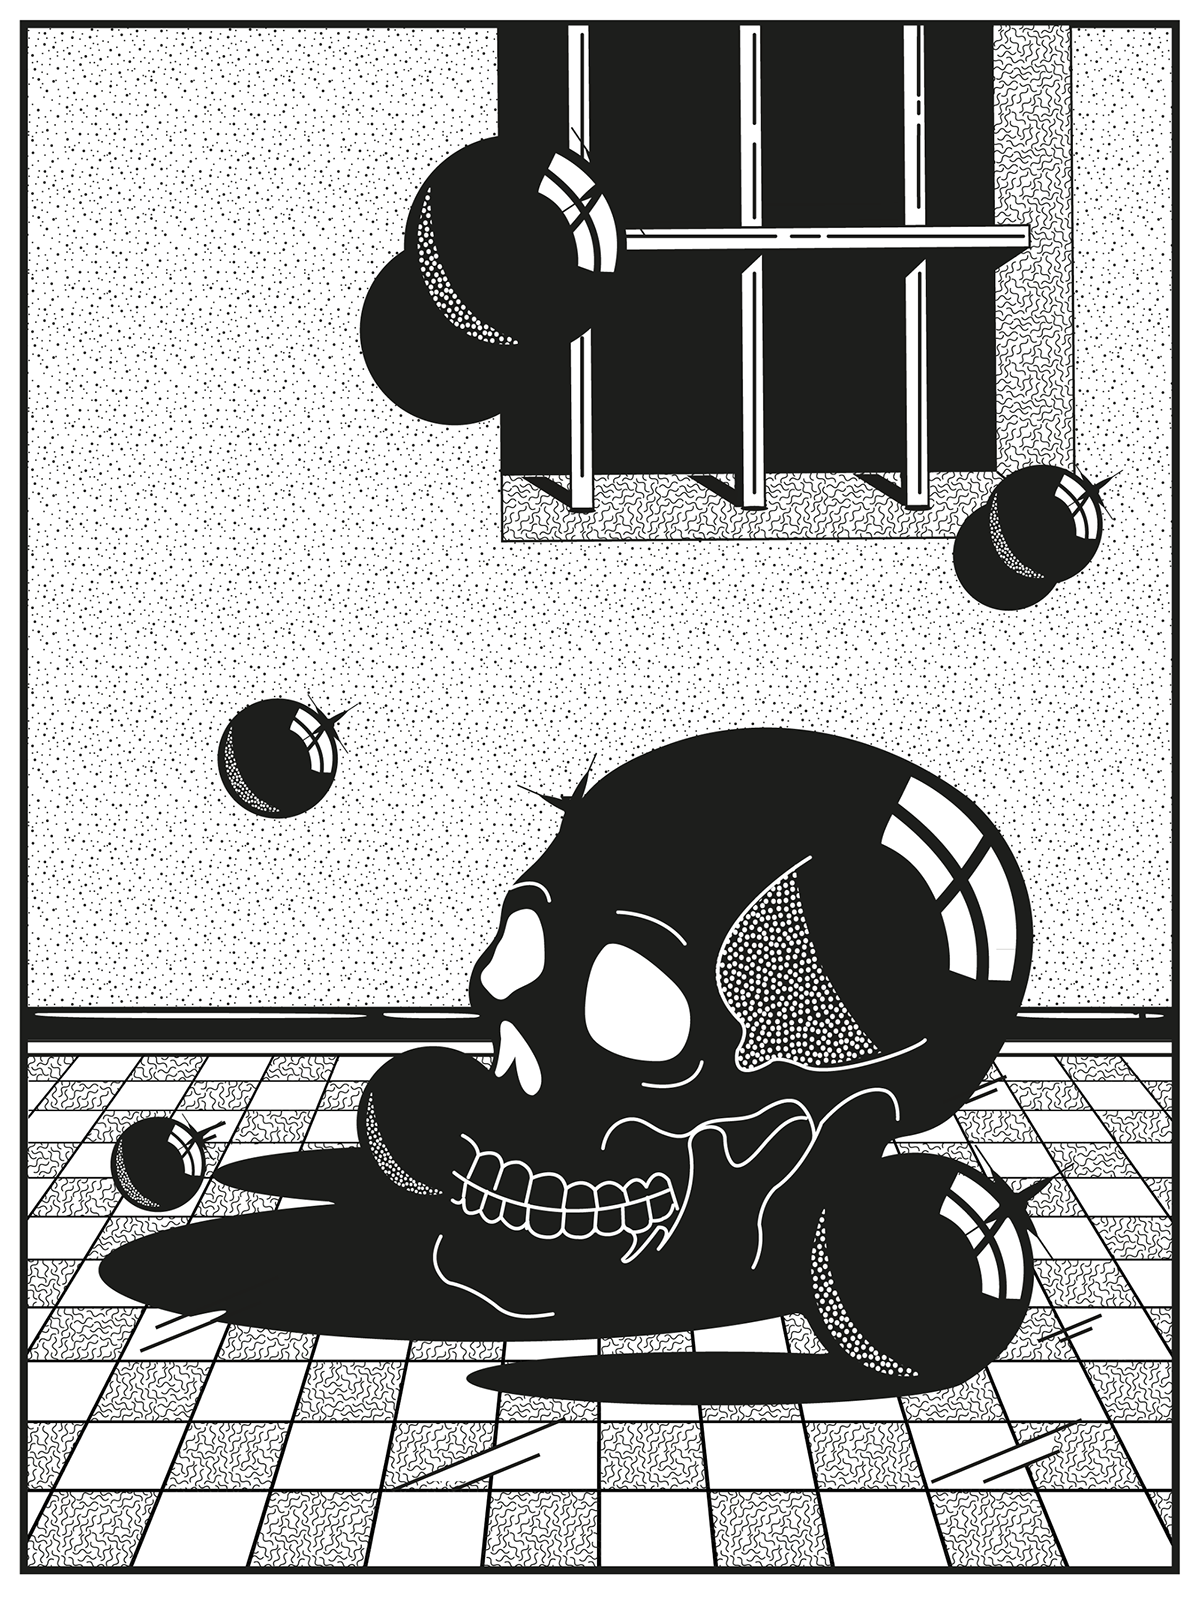 dark skull balls interiors vector graphic Vectorial Illustrator Patterns